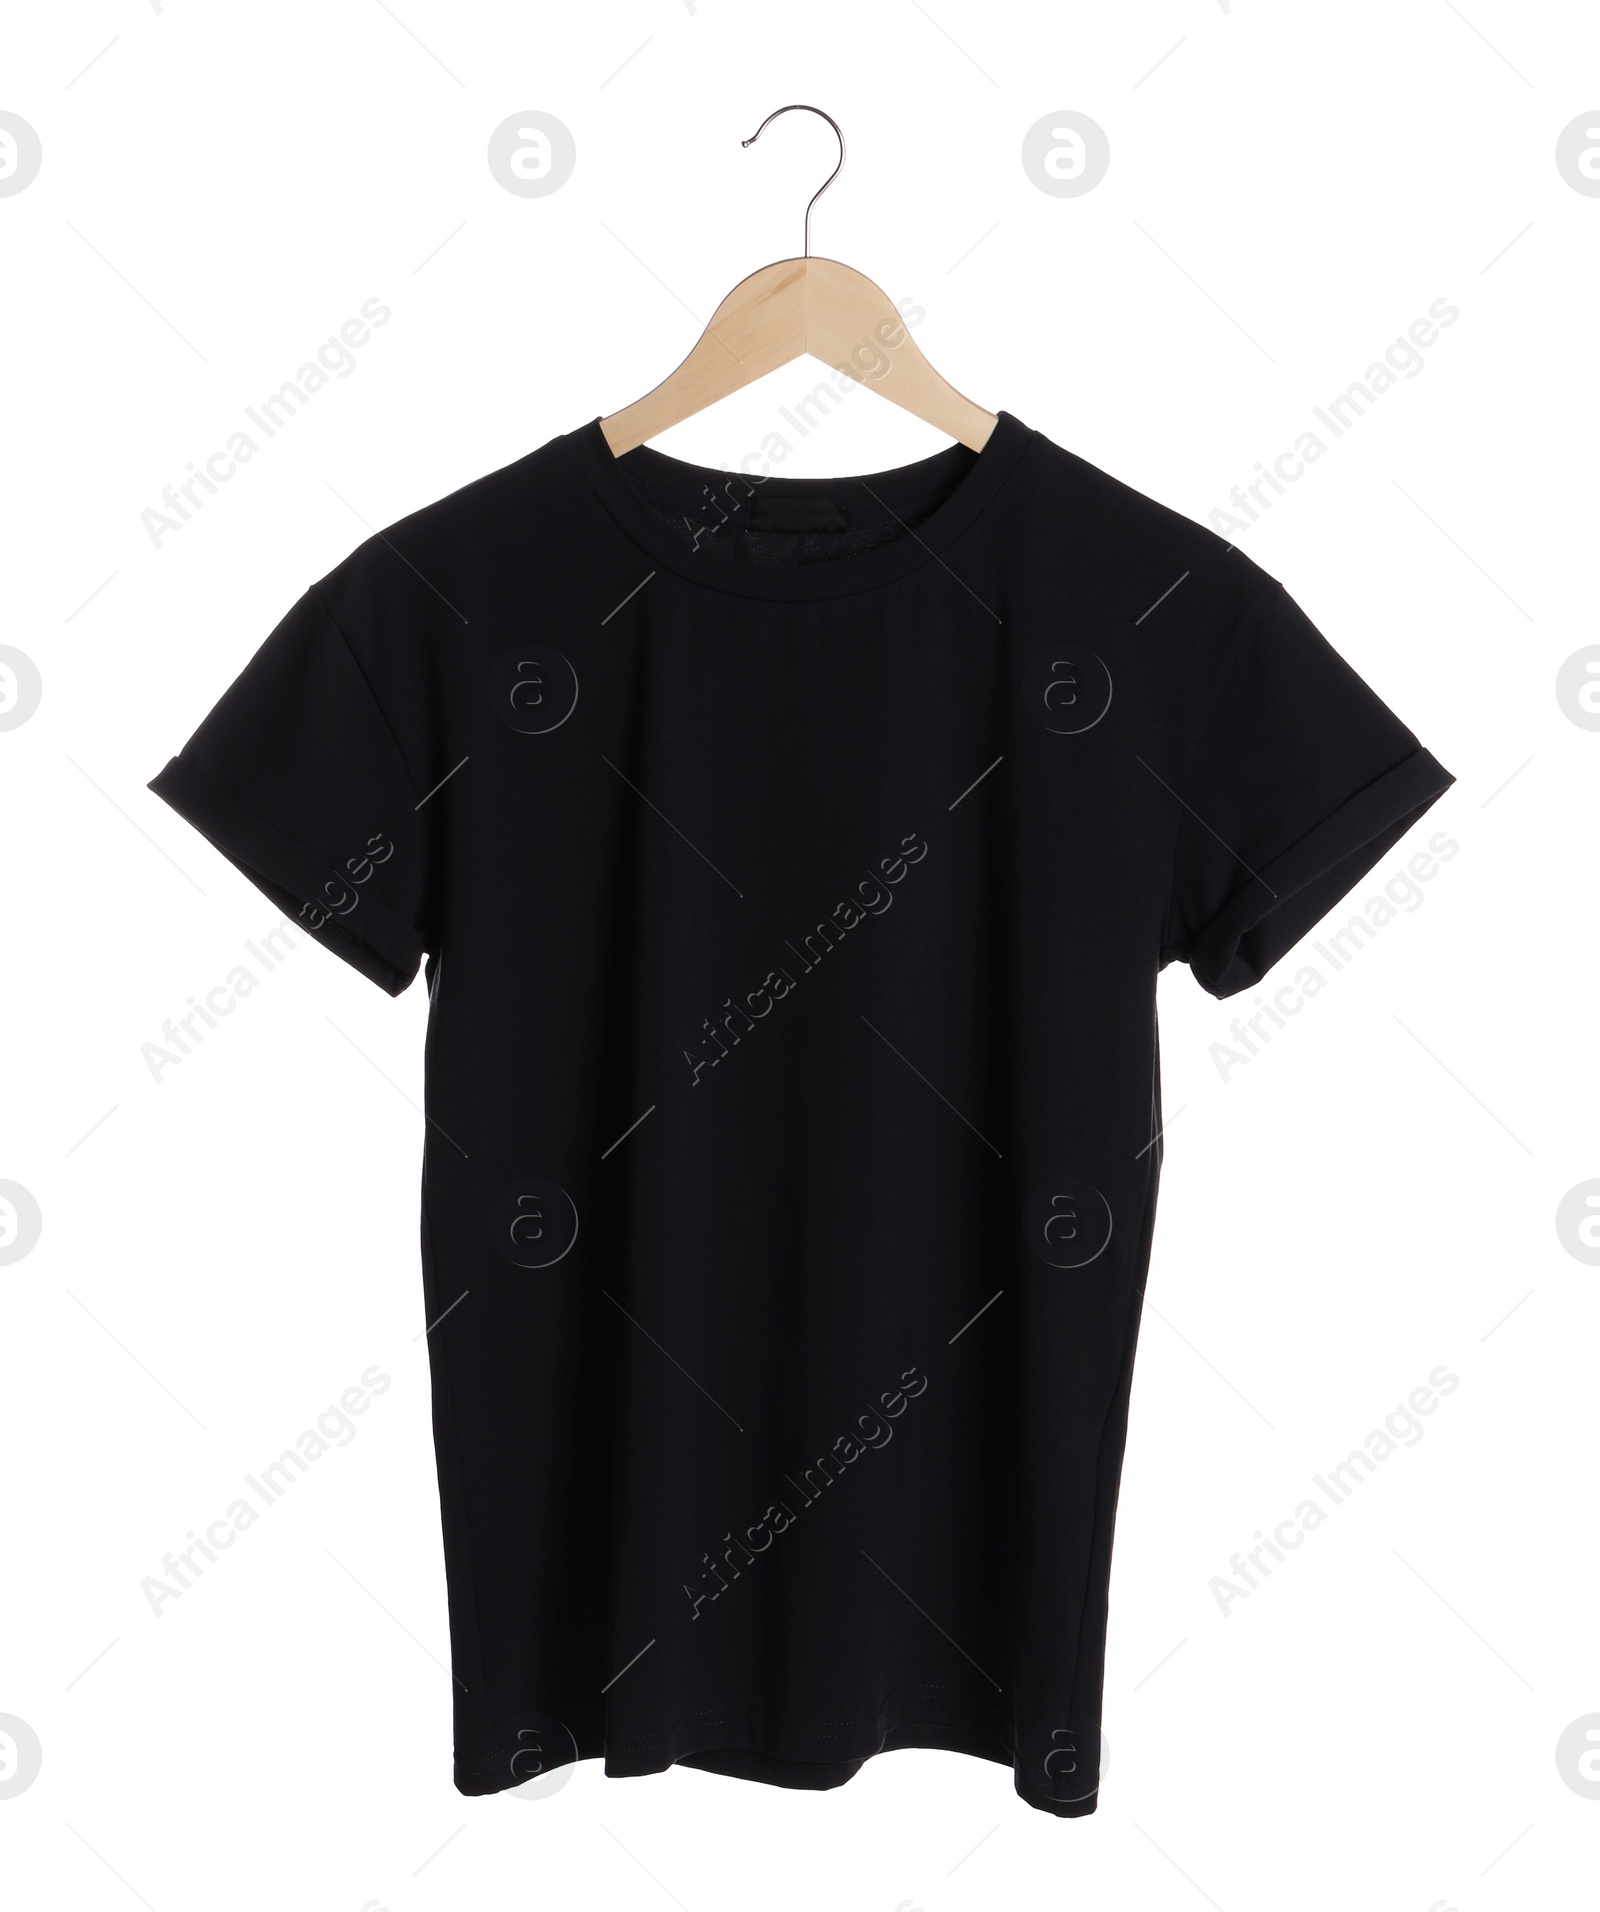 Photo of Hanger with stylish black t-shirt on white background